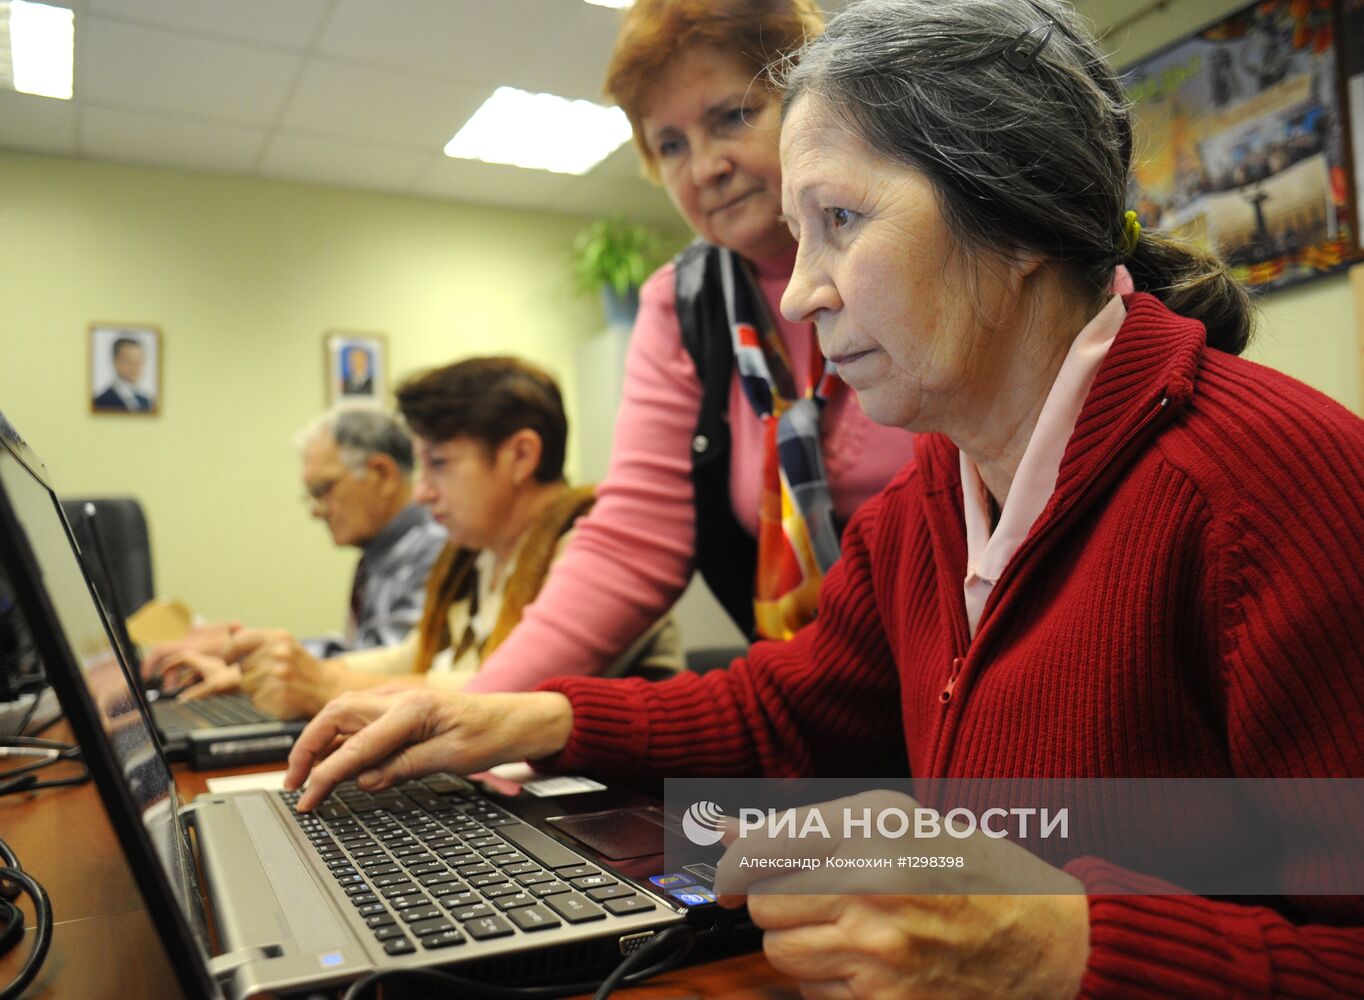 Работа центра социального обслуживания населения в Новой Москве